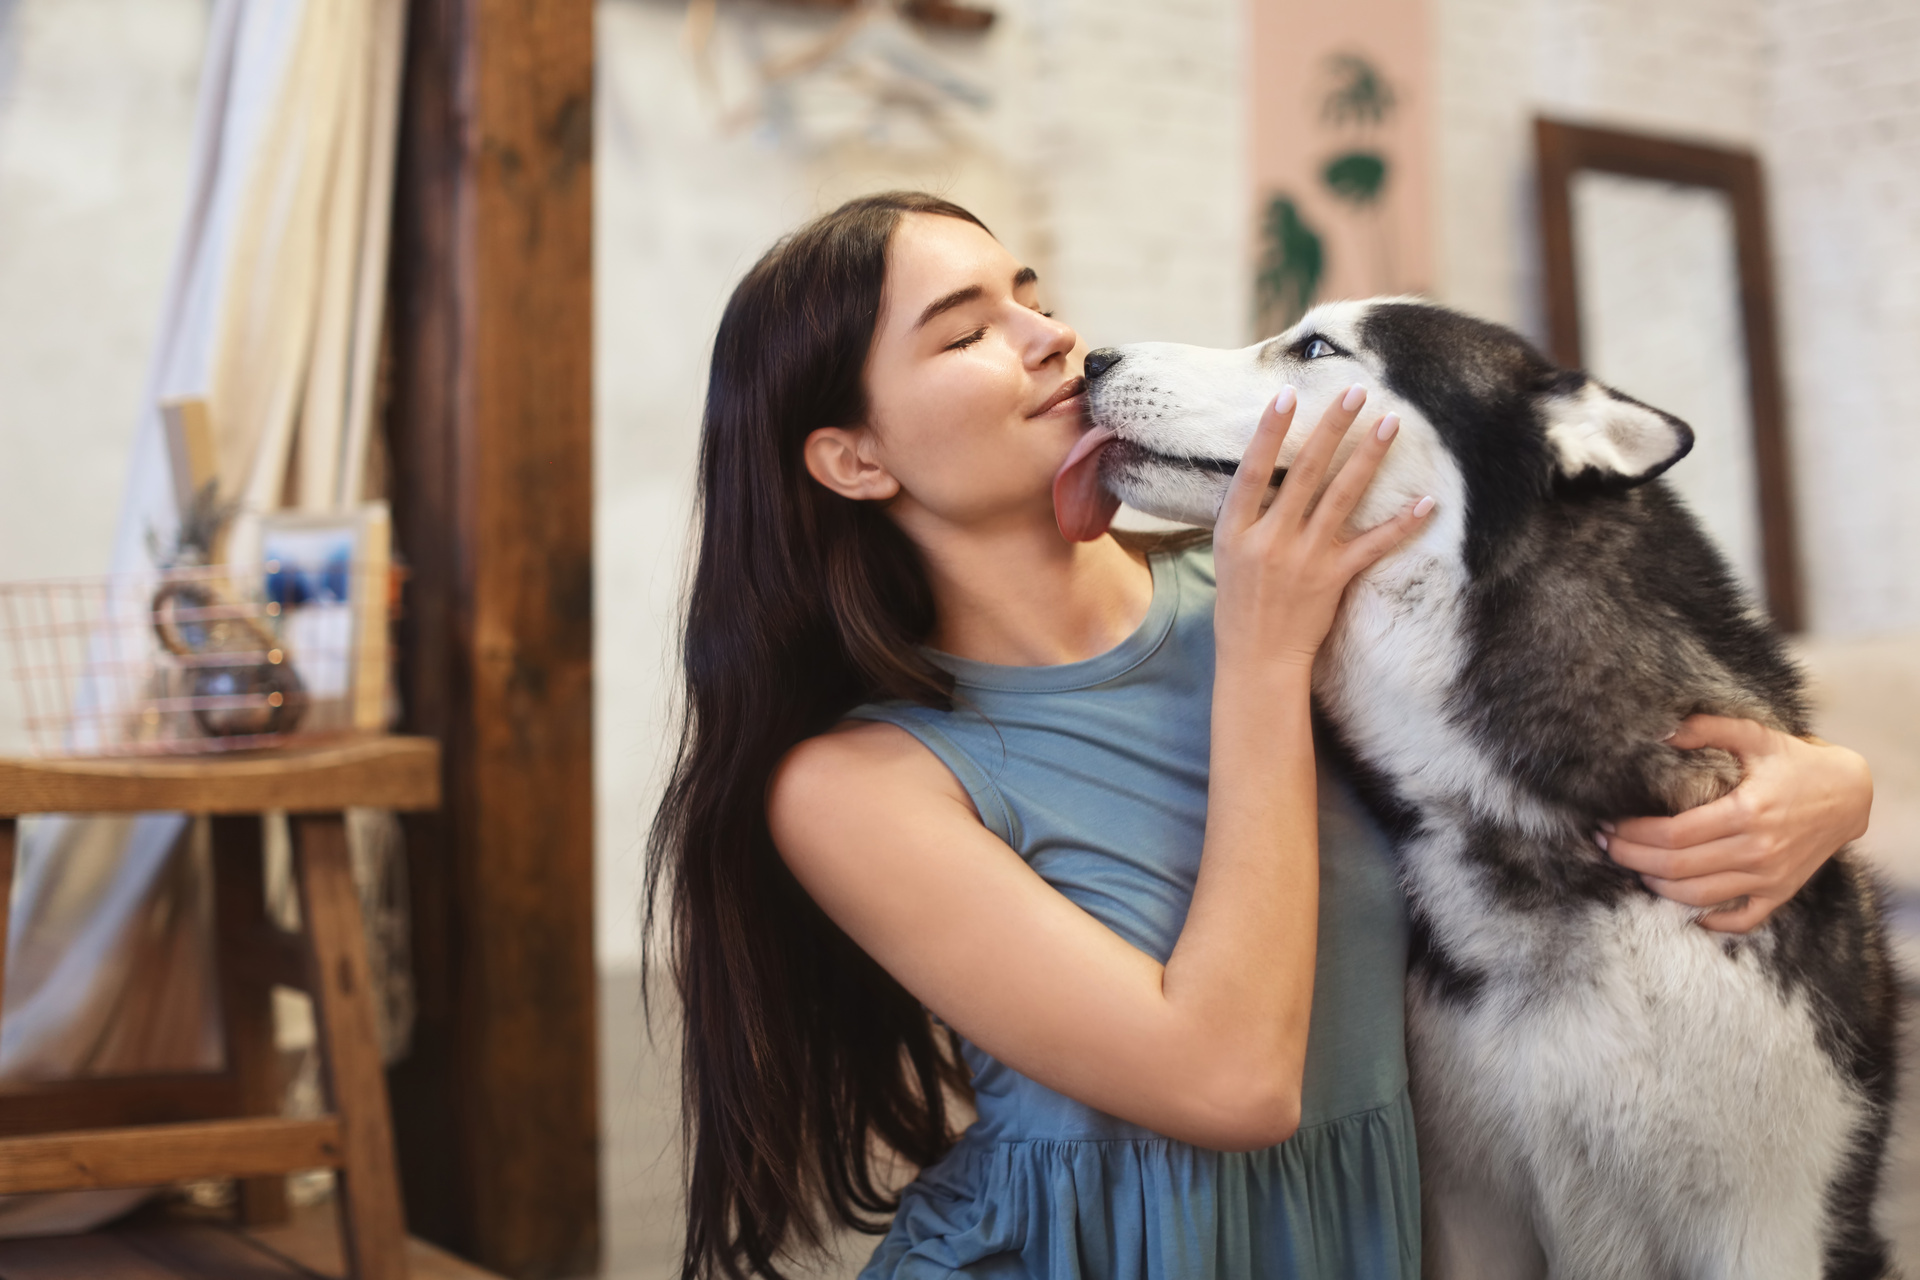 Motivos por los que un perro lame la cara, según psicóloga canina. Noticias en tiempo real